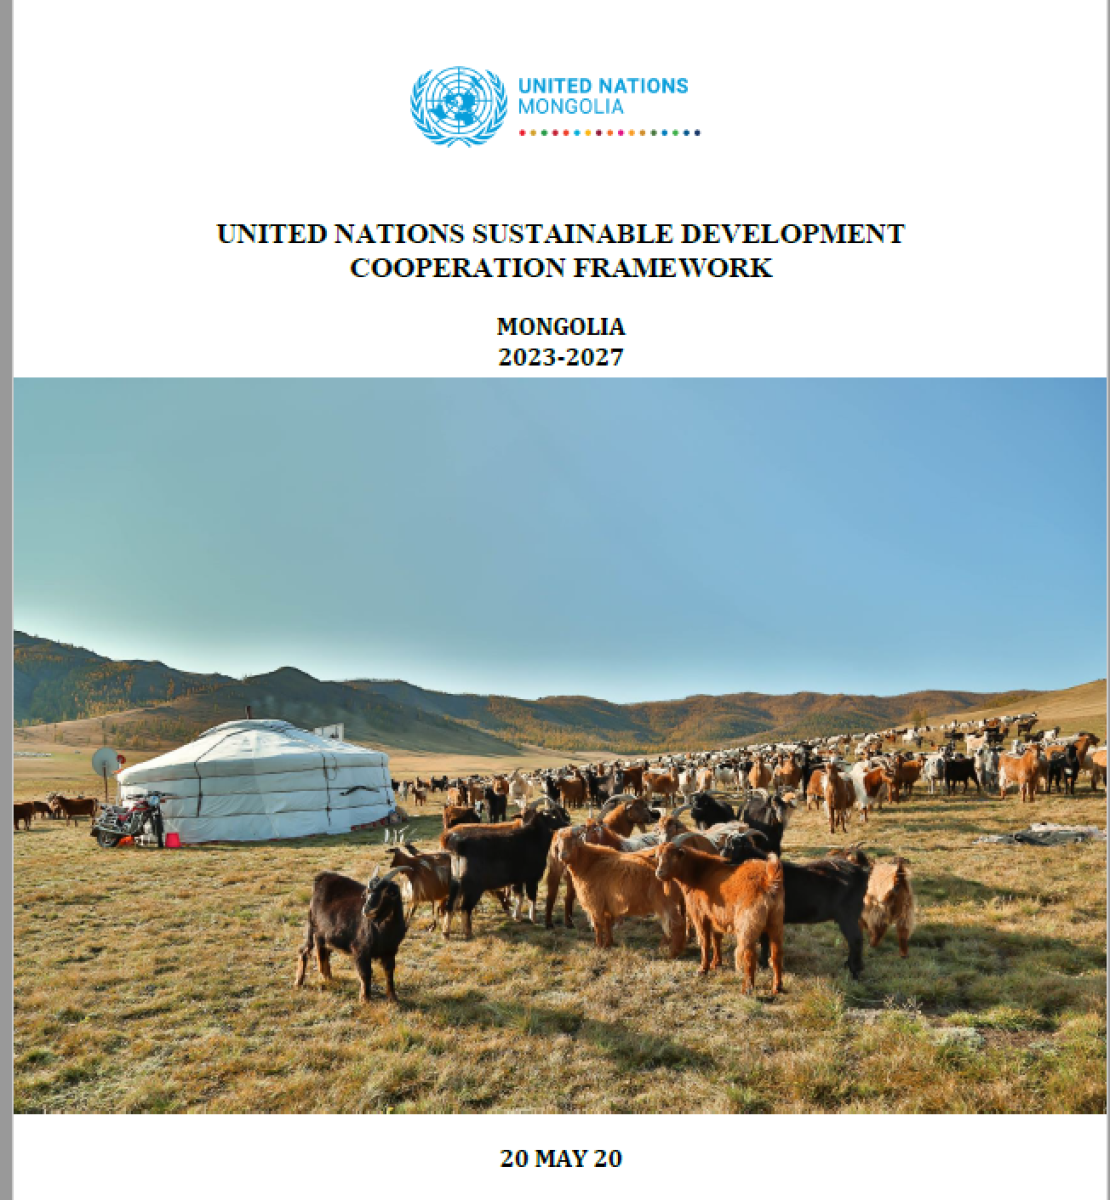 Se trata de un documento en fondo blanco con texto azul y negro. El logotipo del equipo de las Naciones Unidas en el país aparece en el centro, cenca de una fotografía de animales de pastoreo.